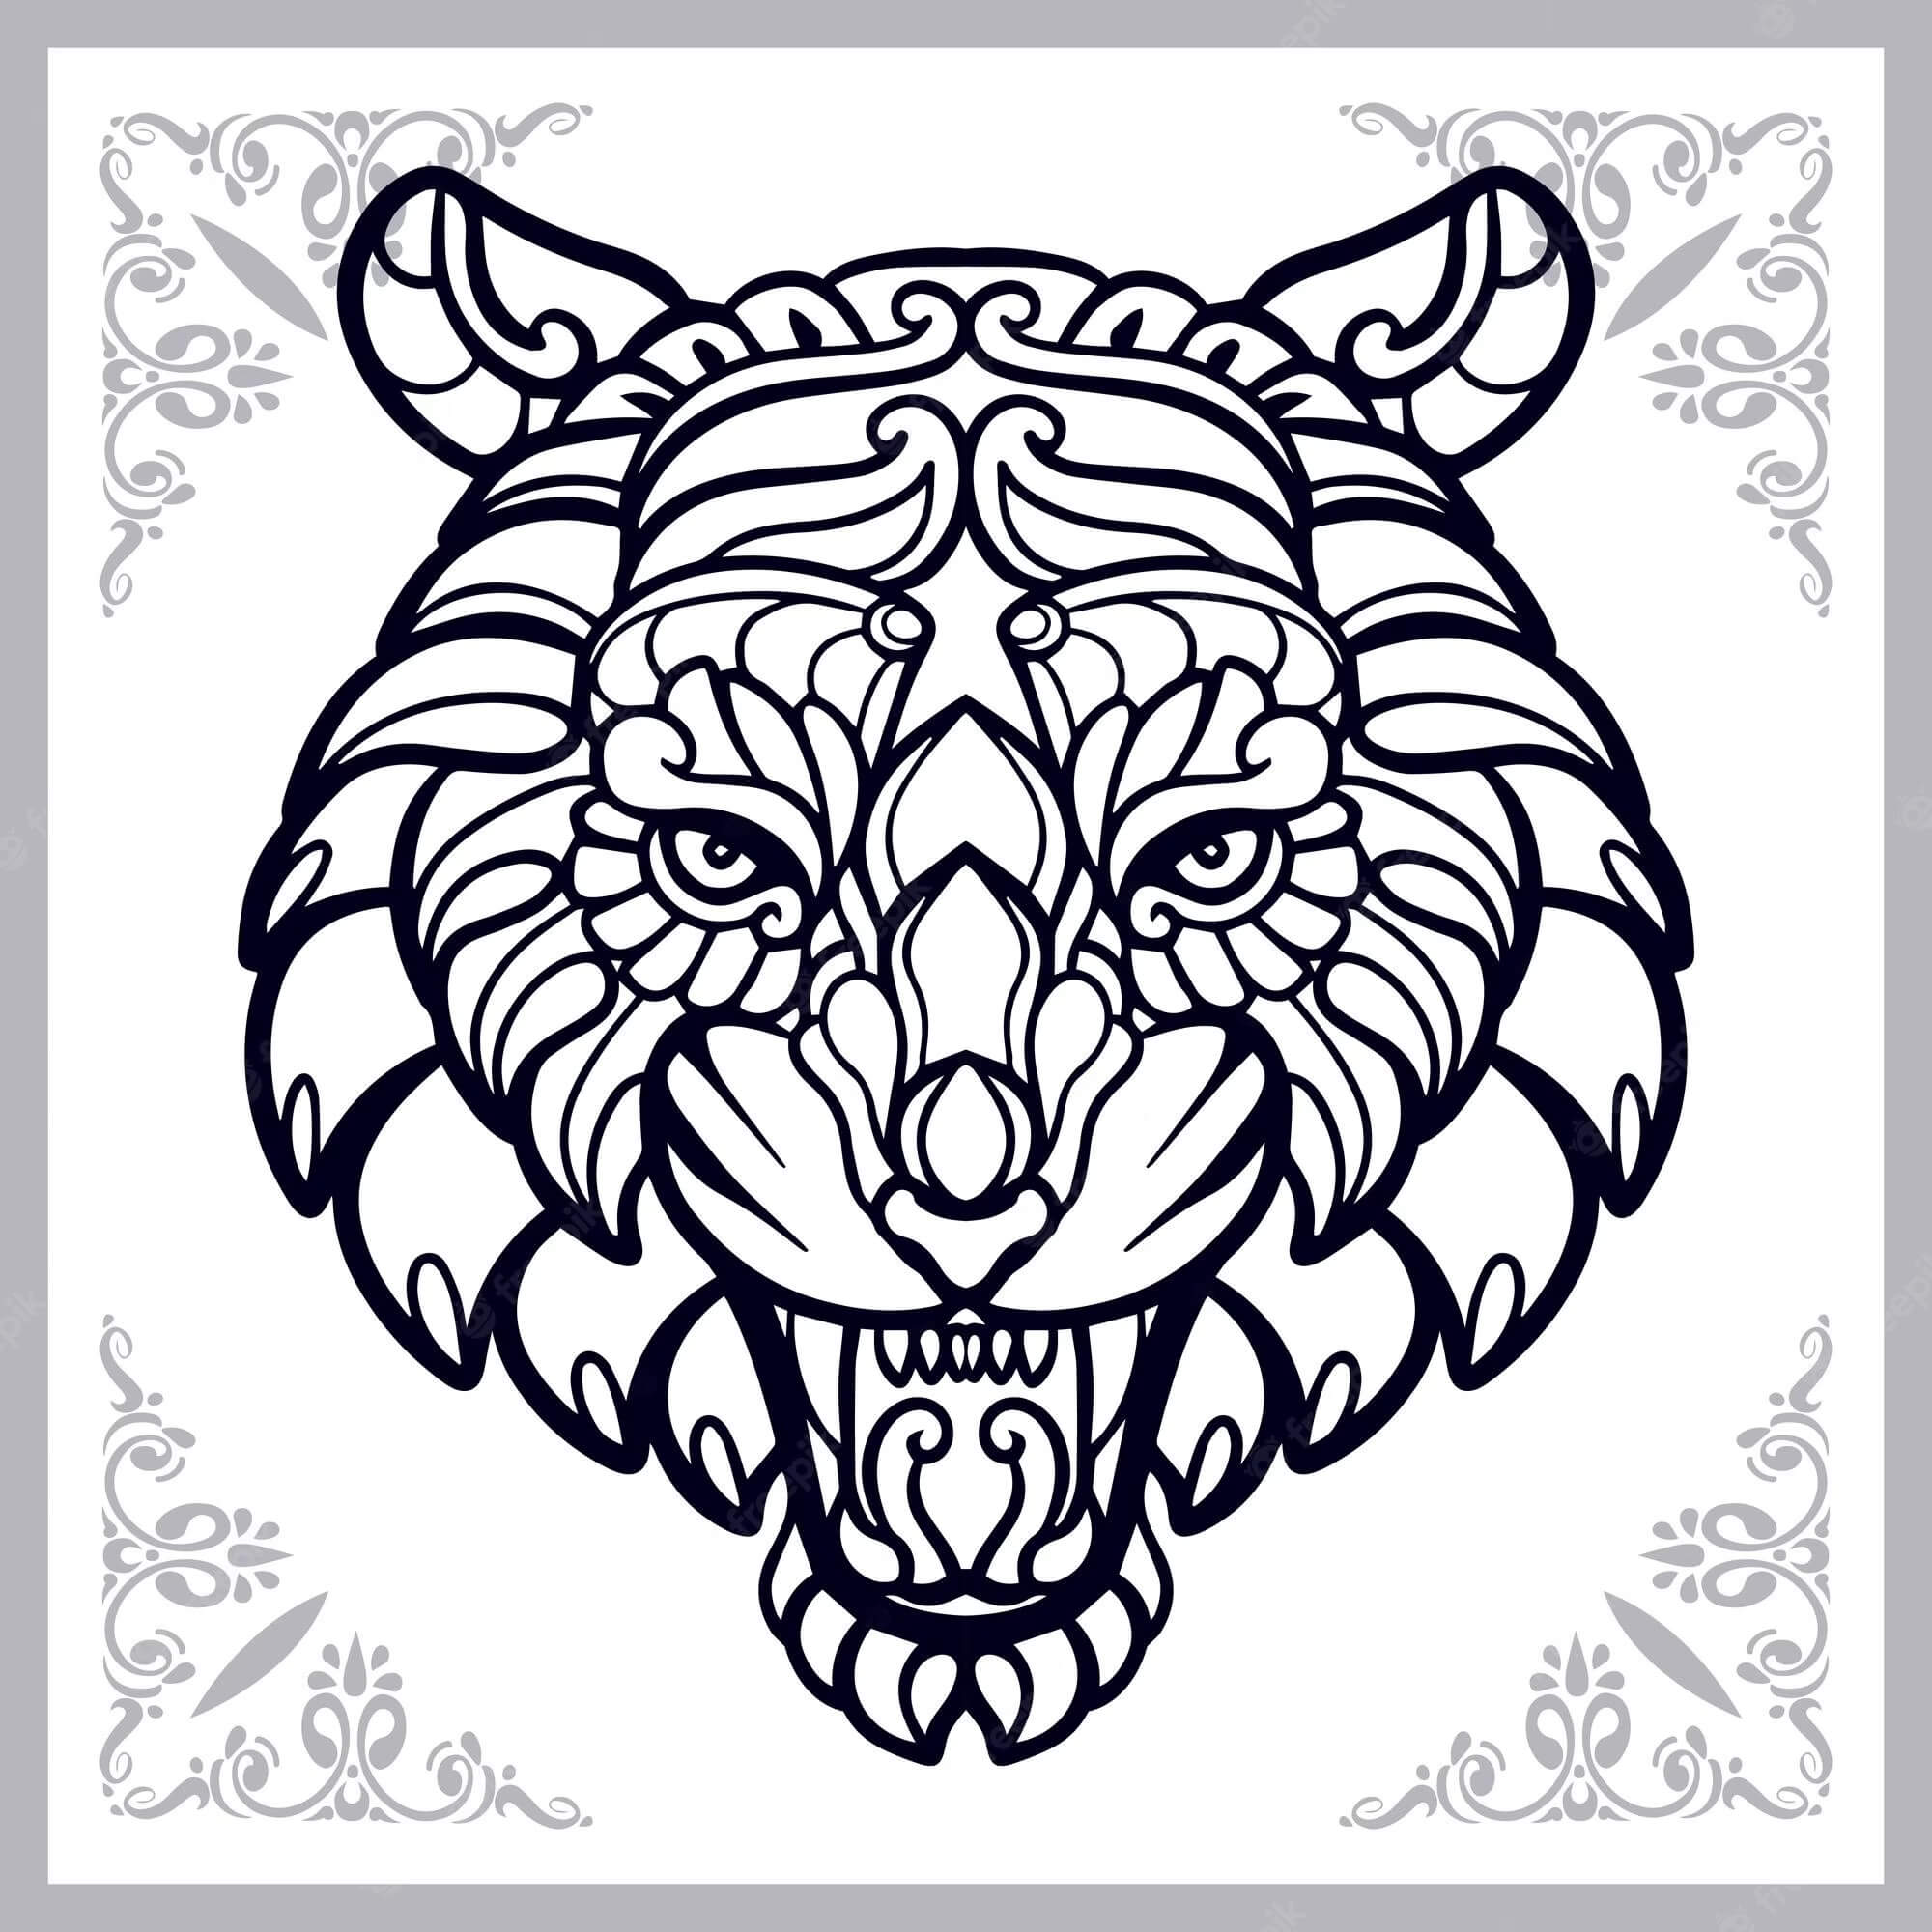 Mandala Tiger Coloring Page - Sheet 6 Mandalas